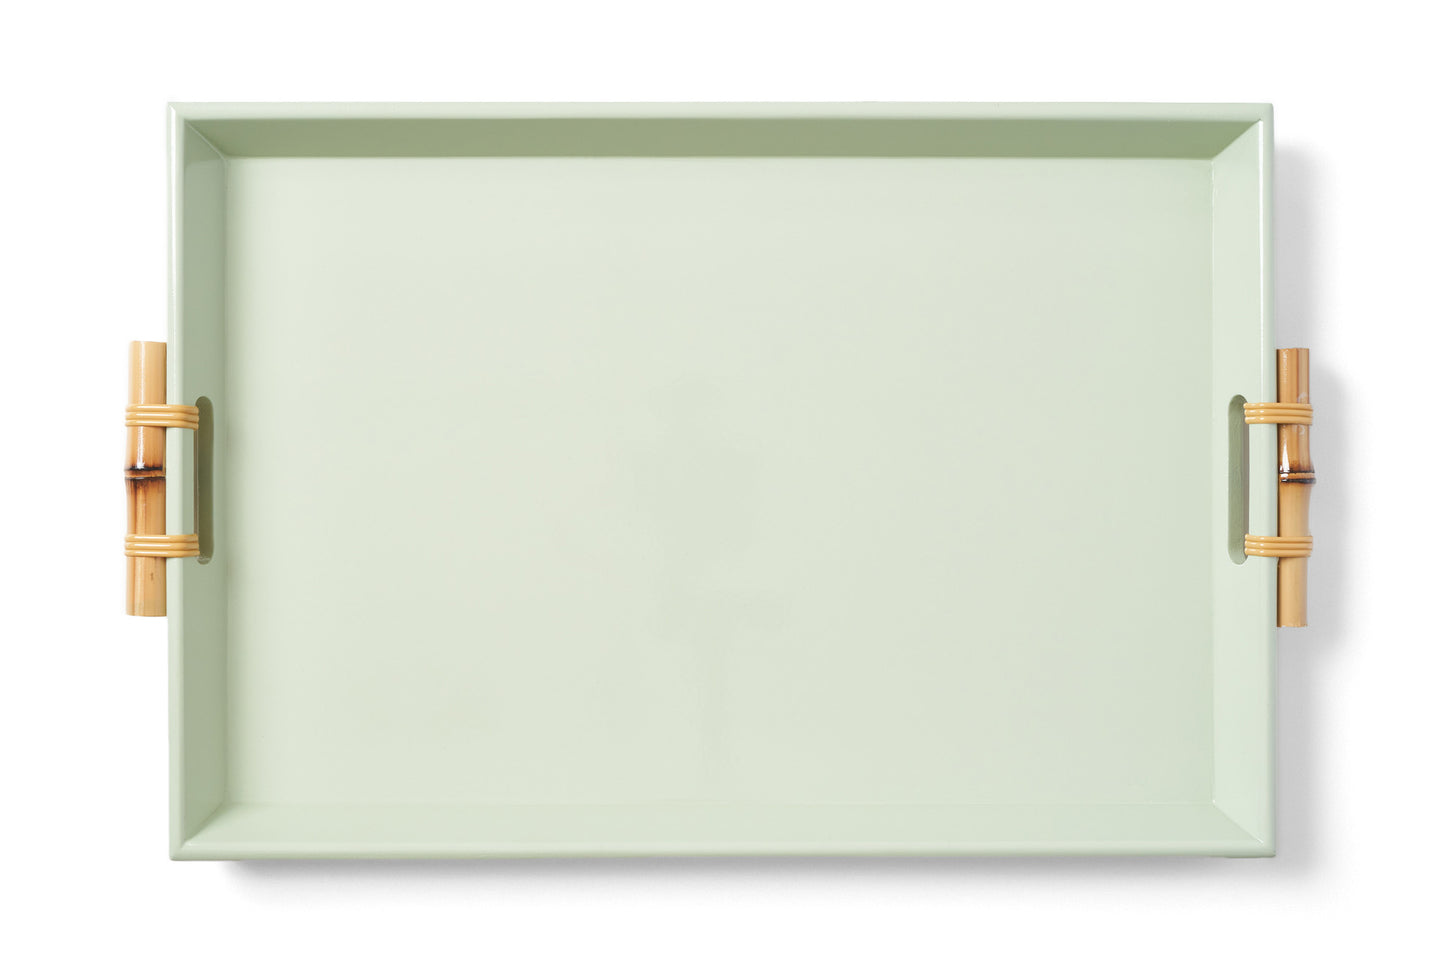 Bandeja Tânia Modelo Novo P Bambuzinho em MDF Laqueado - Verde Celadon Claro